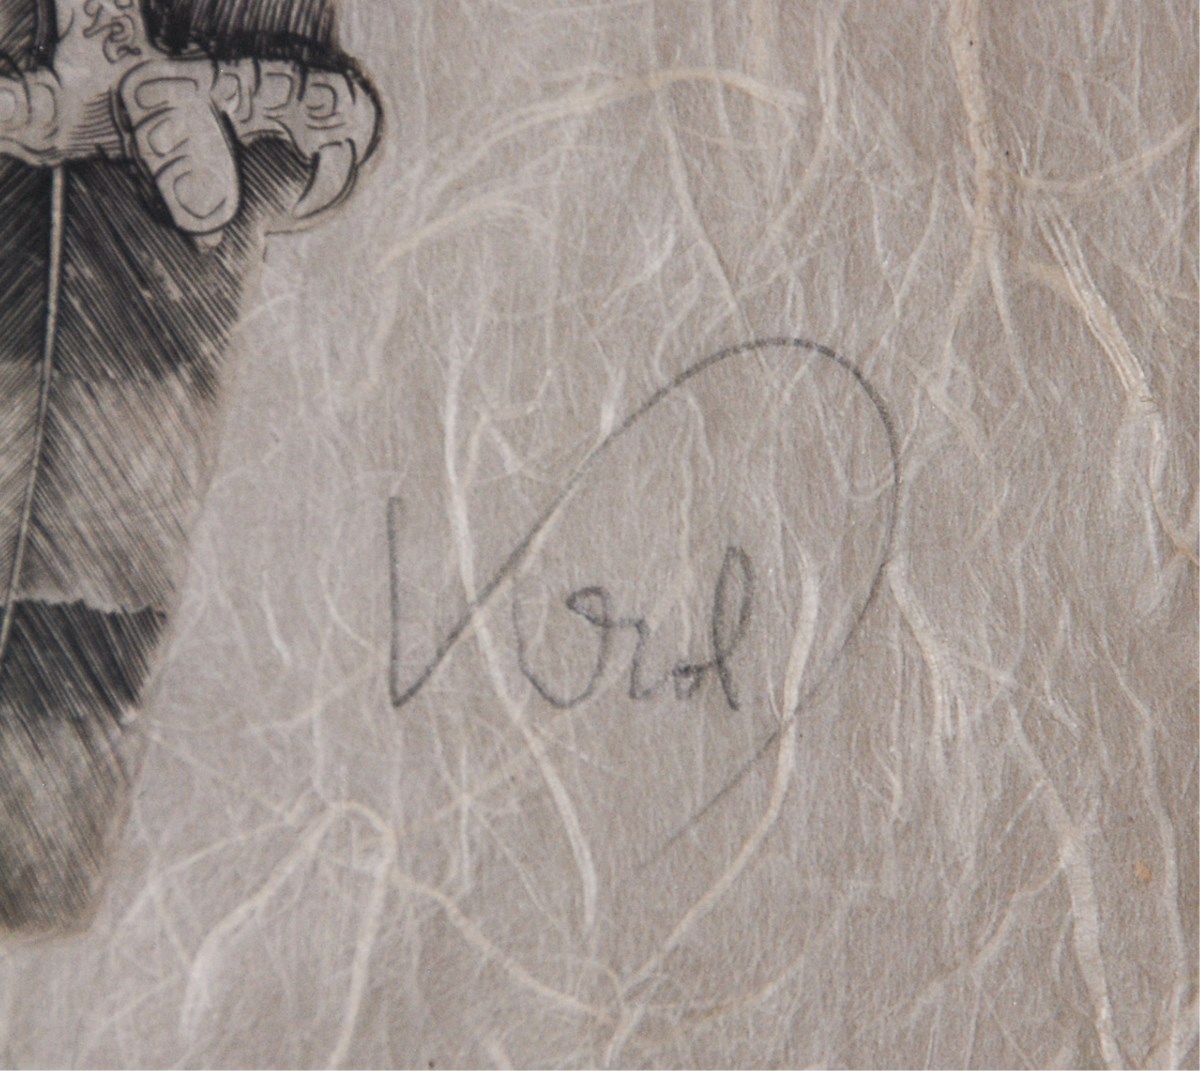 Framed Ink On Paper Owl Signed - Image 3 of 3